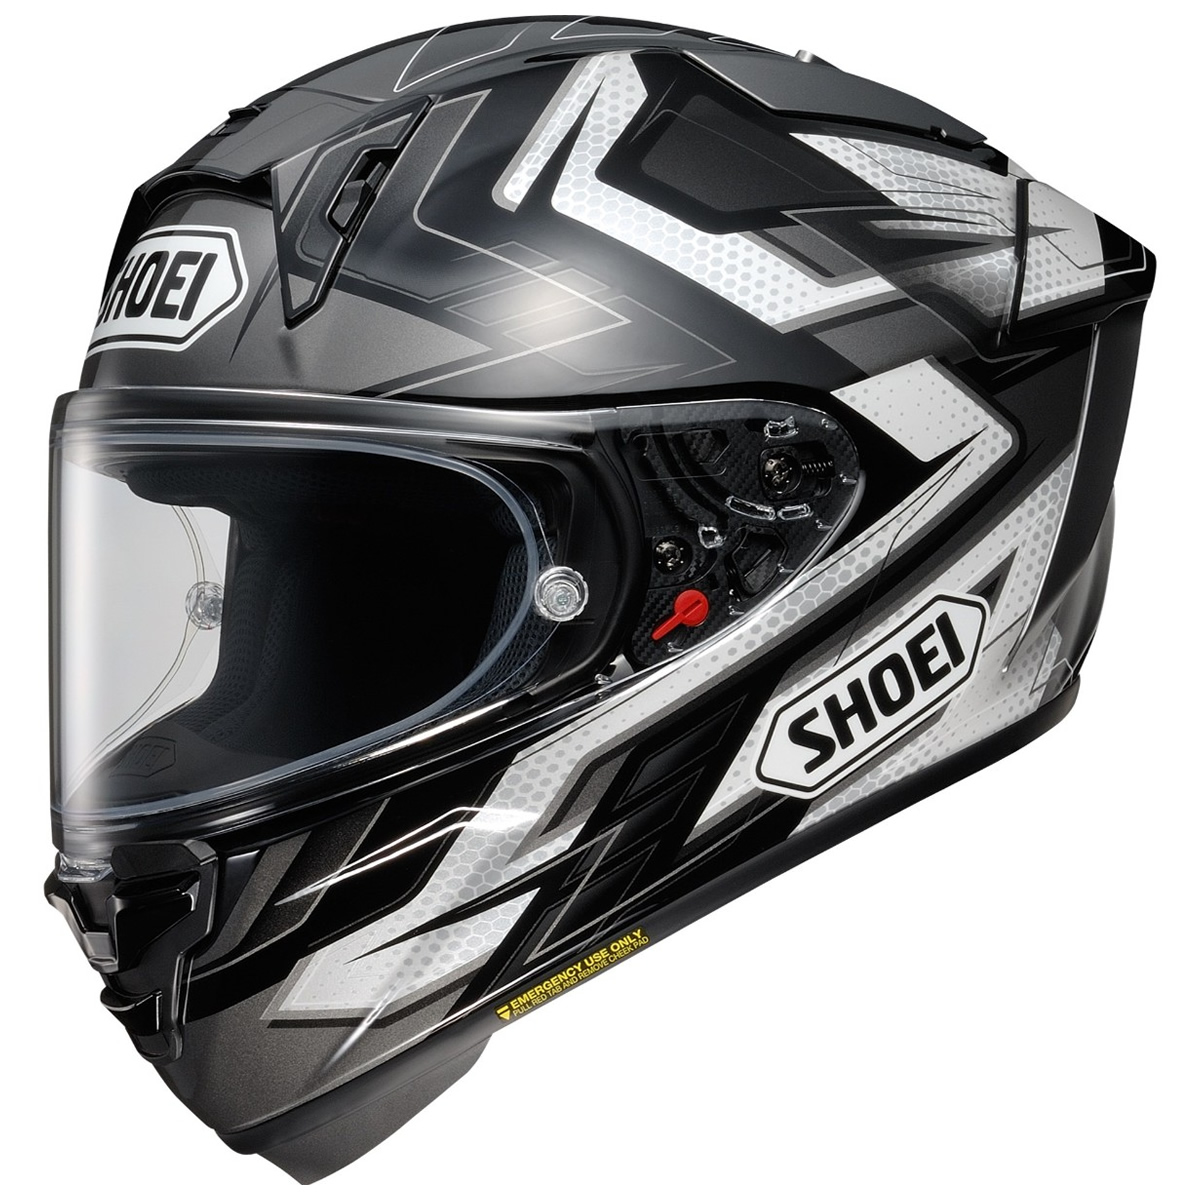 Shoei Helm X-SPR PRO Escalate, schwarz-grau-weiß